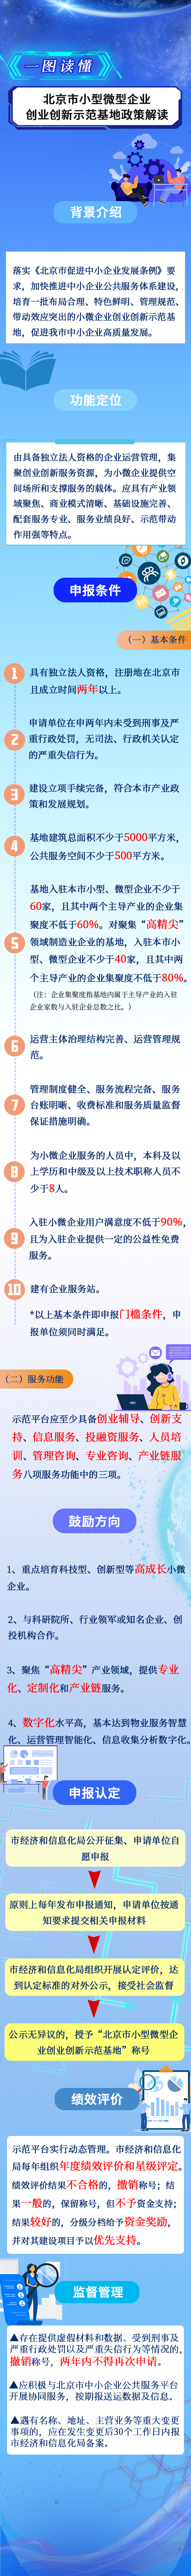 北京市小型微型企业创业创新示范基地管理办法.jpg